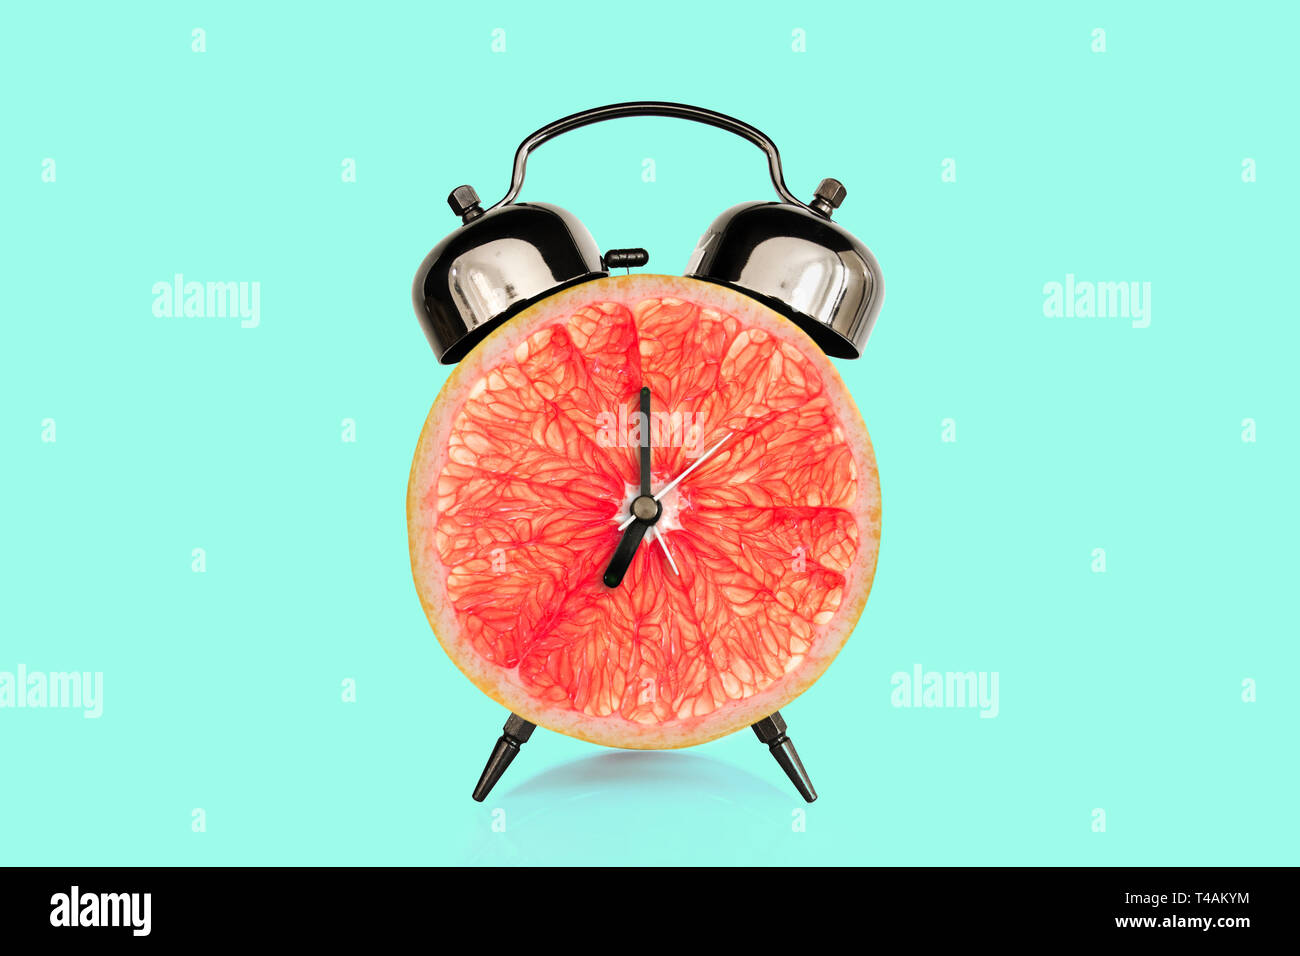 Rodaja de pomelo reloj alarma, azul pastel. fondo de frutas y vitaminas dieta al concepto de nutrición desayuno Foto de stock